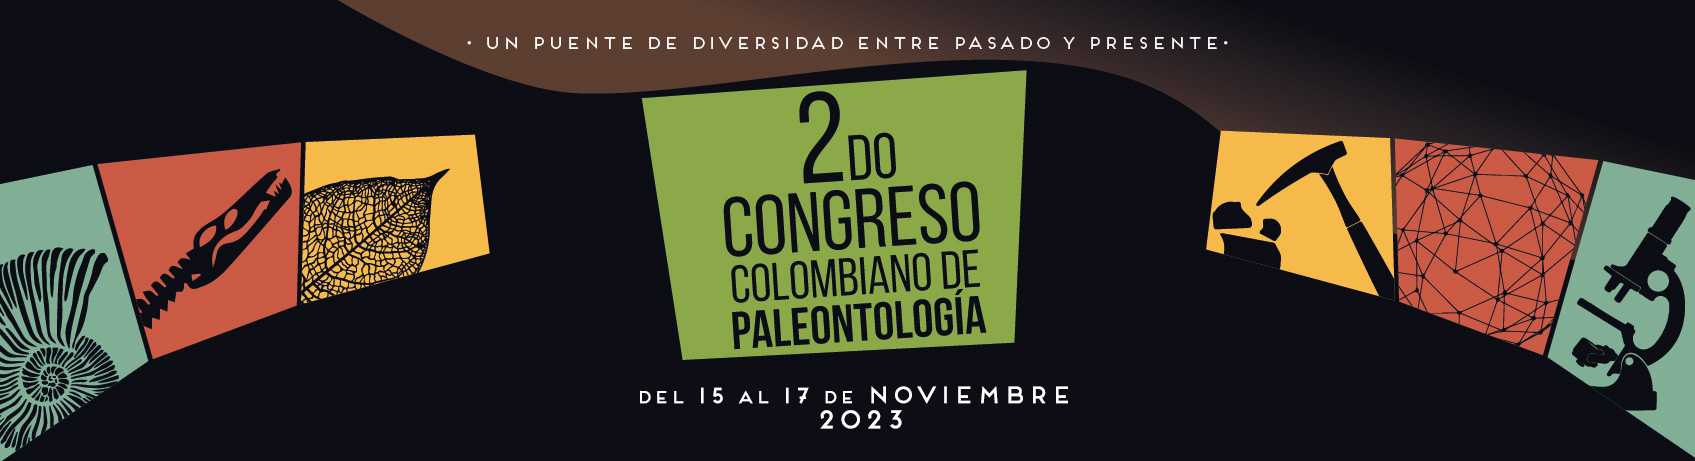 segundo-congreso-colombiano-paleontologia-banner